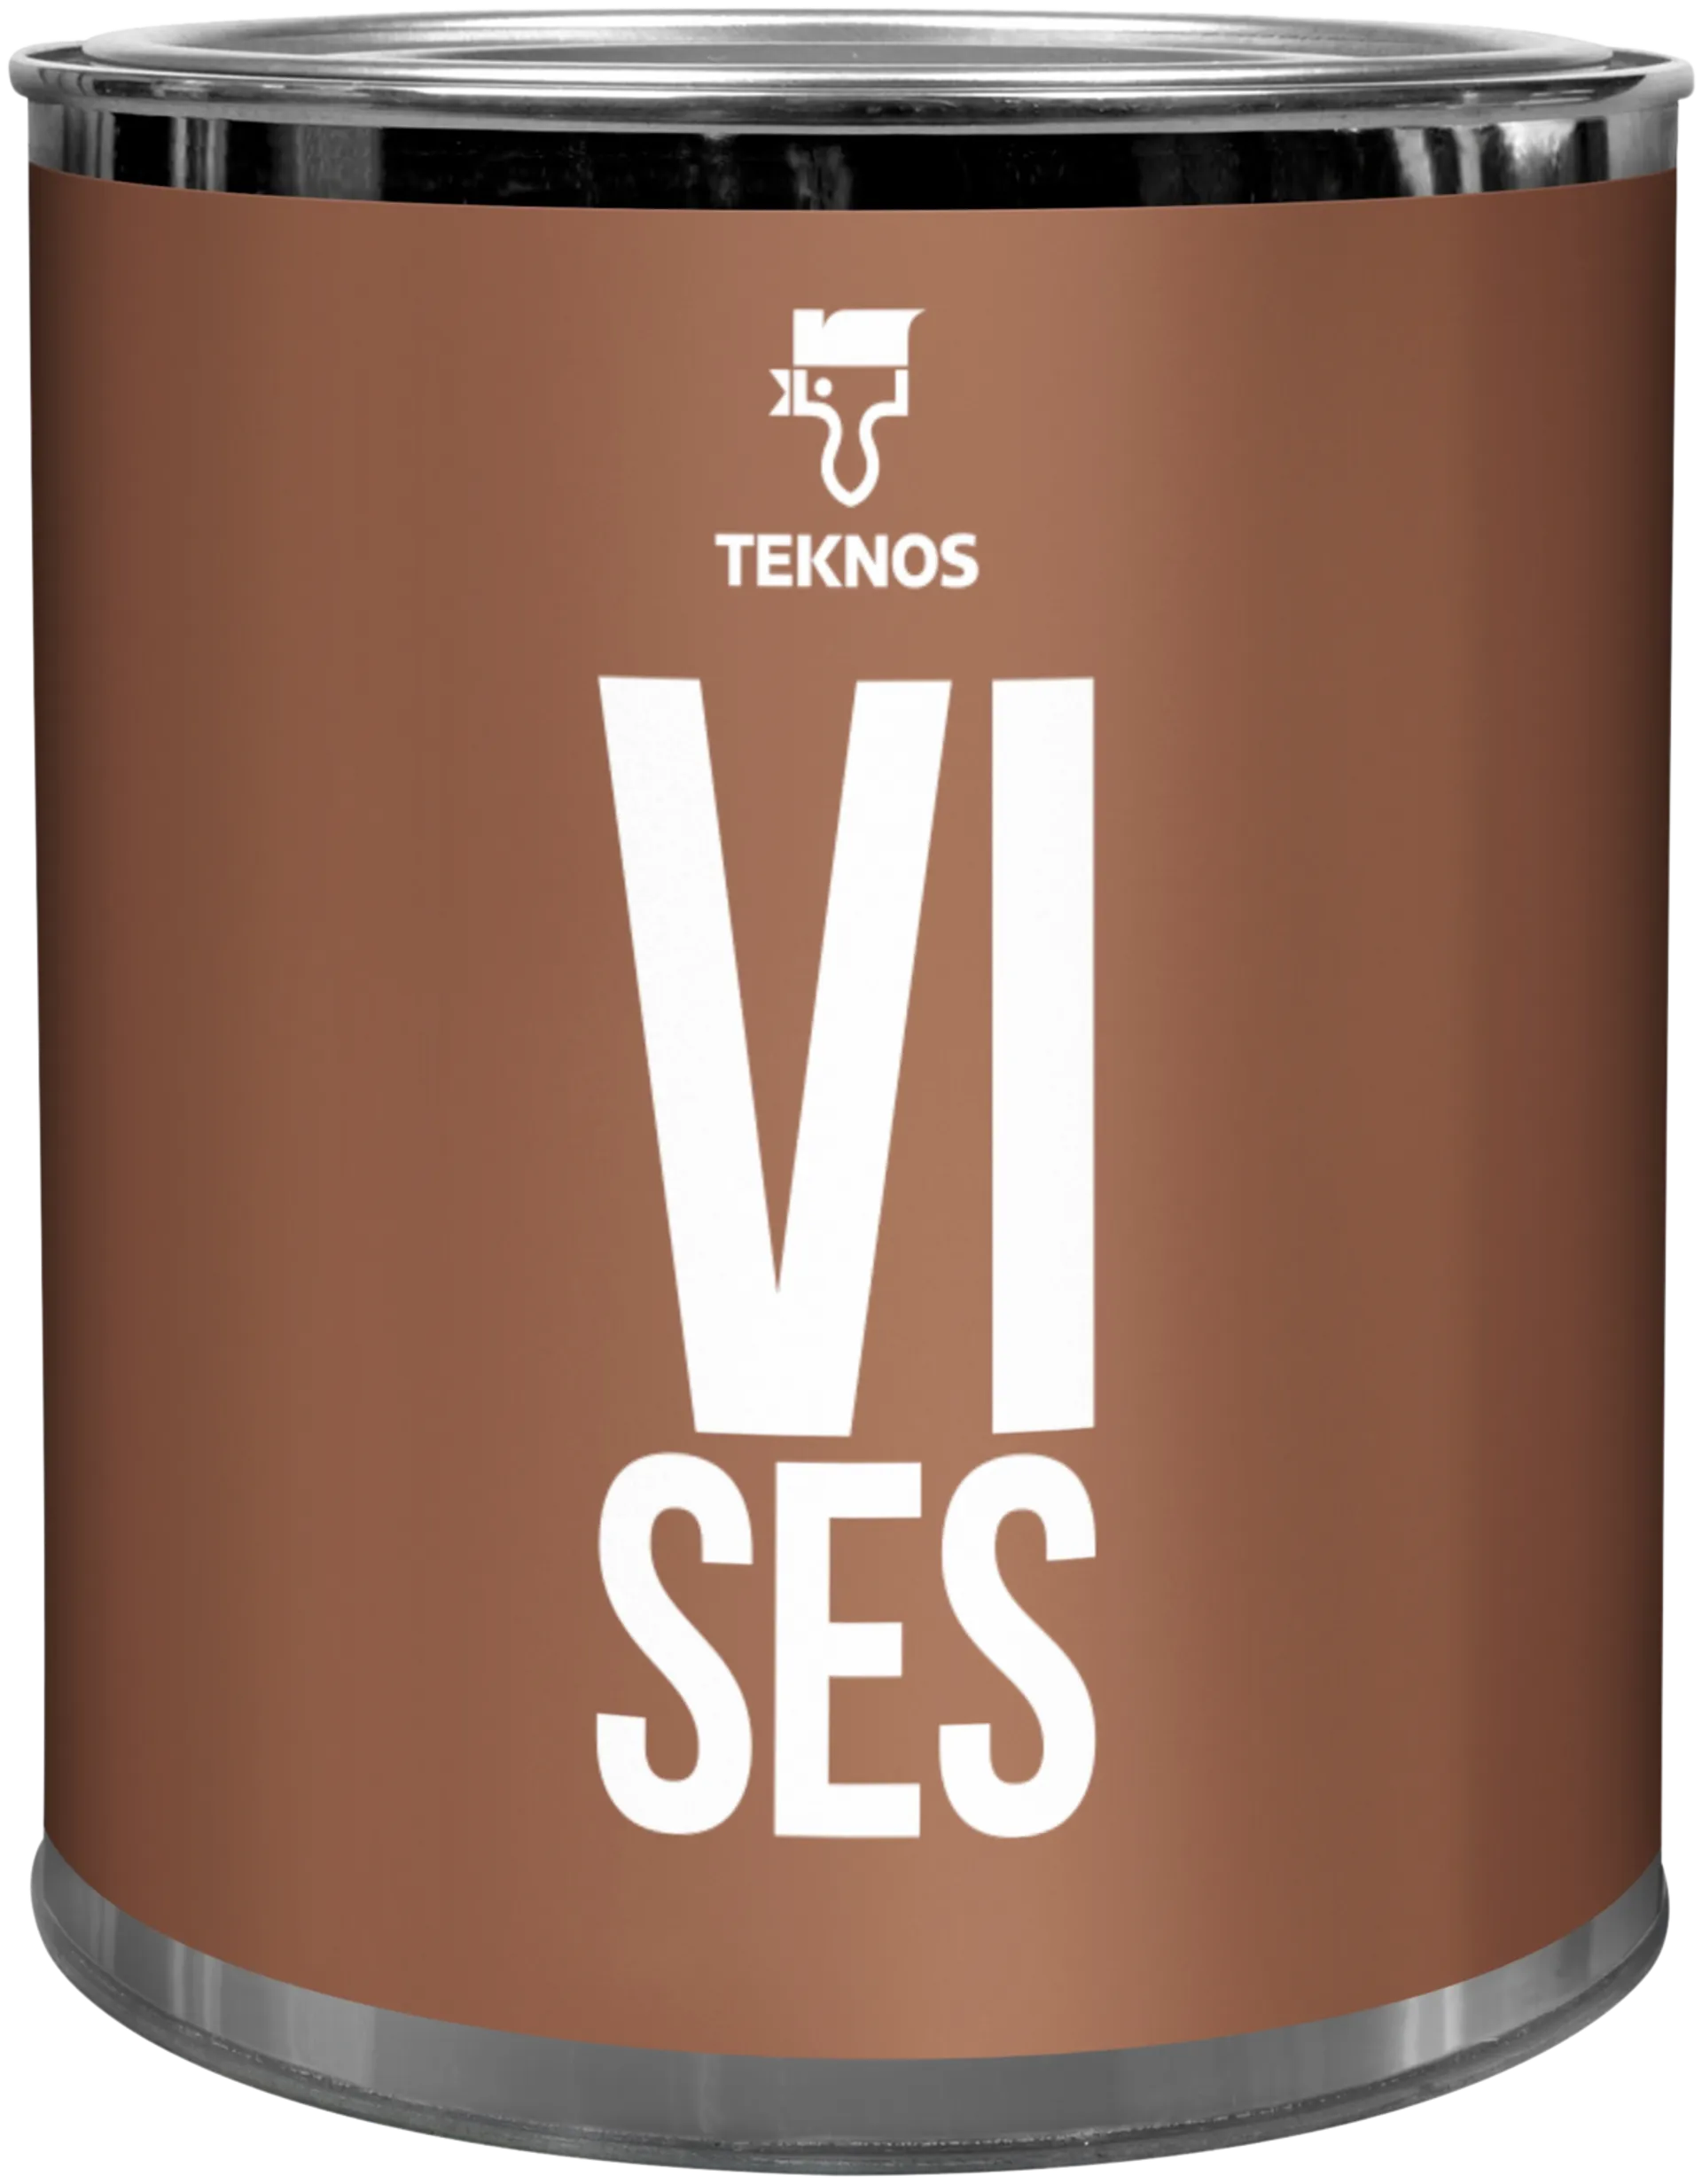 Teknos Colour sample Vi ses T1677